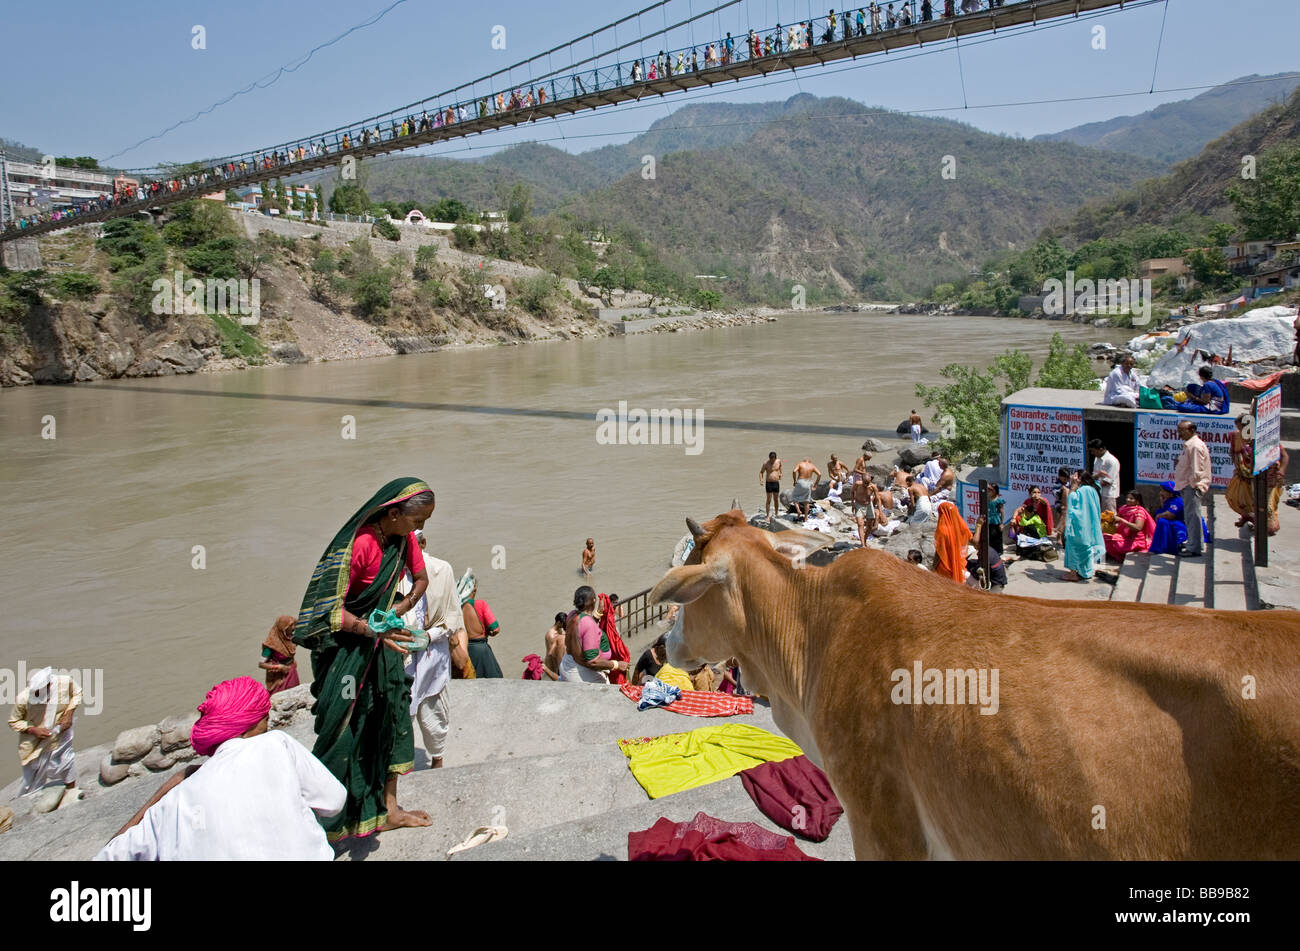 Le séchage des vêtements femme. Gange. Lakshman Jhula. Rishikesh. Uttarakhand. L'Inde Banque D'Images